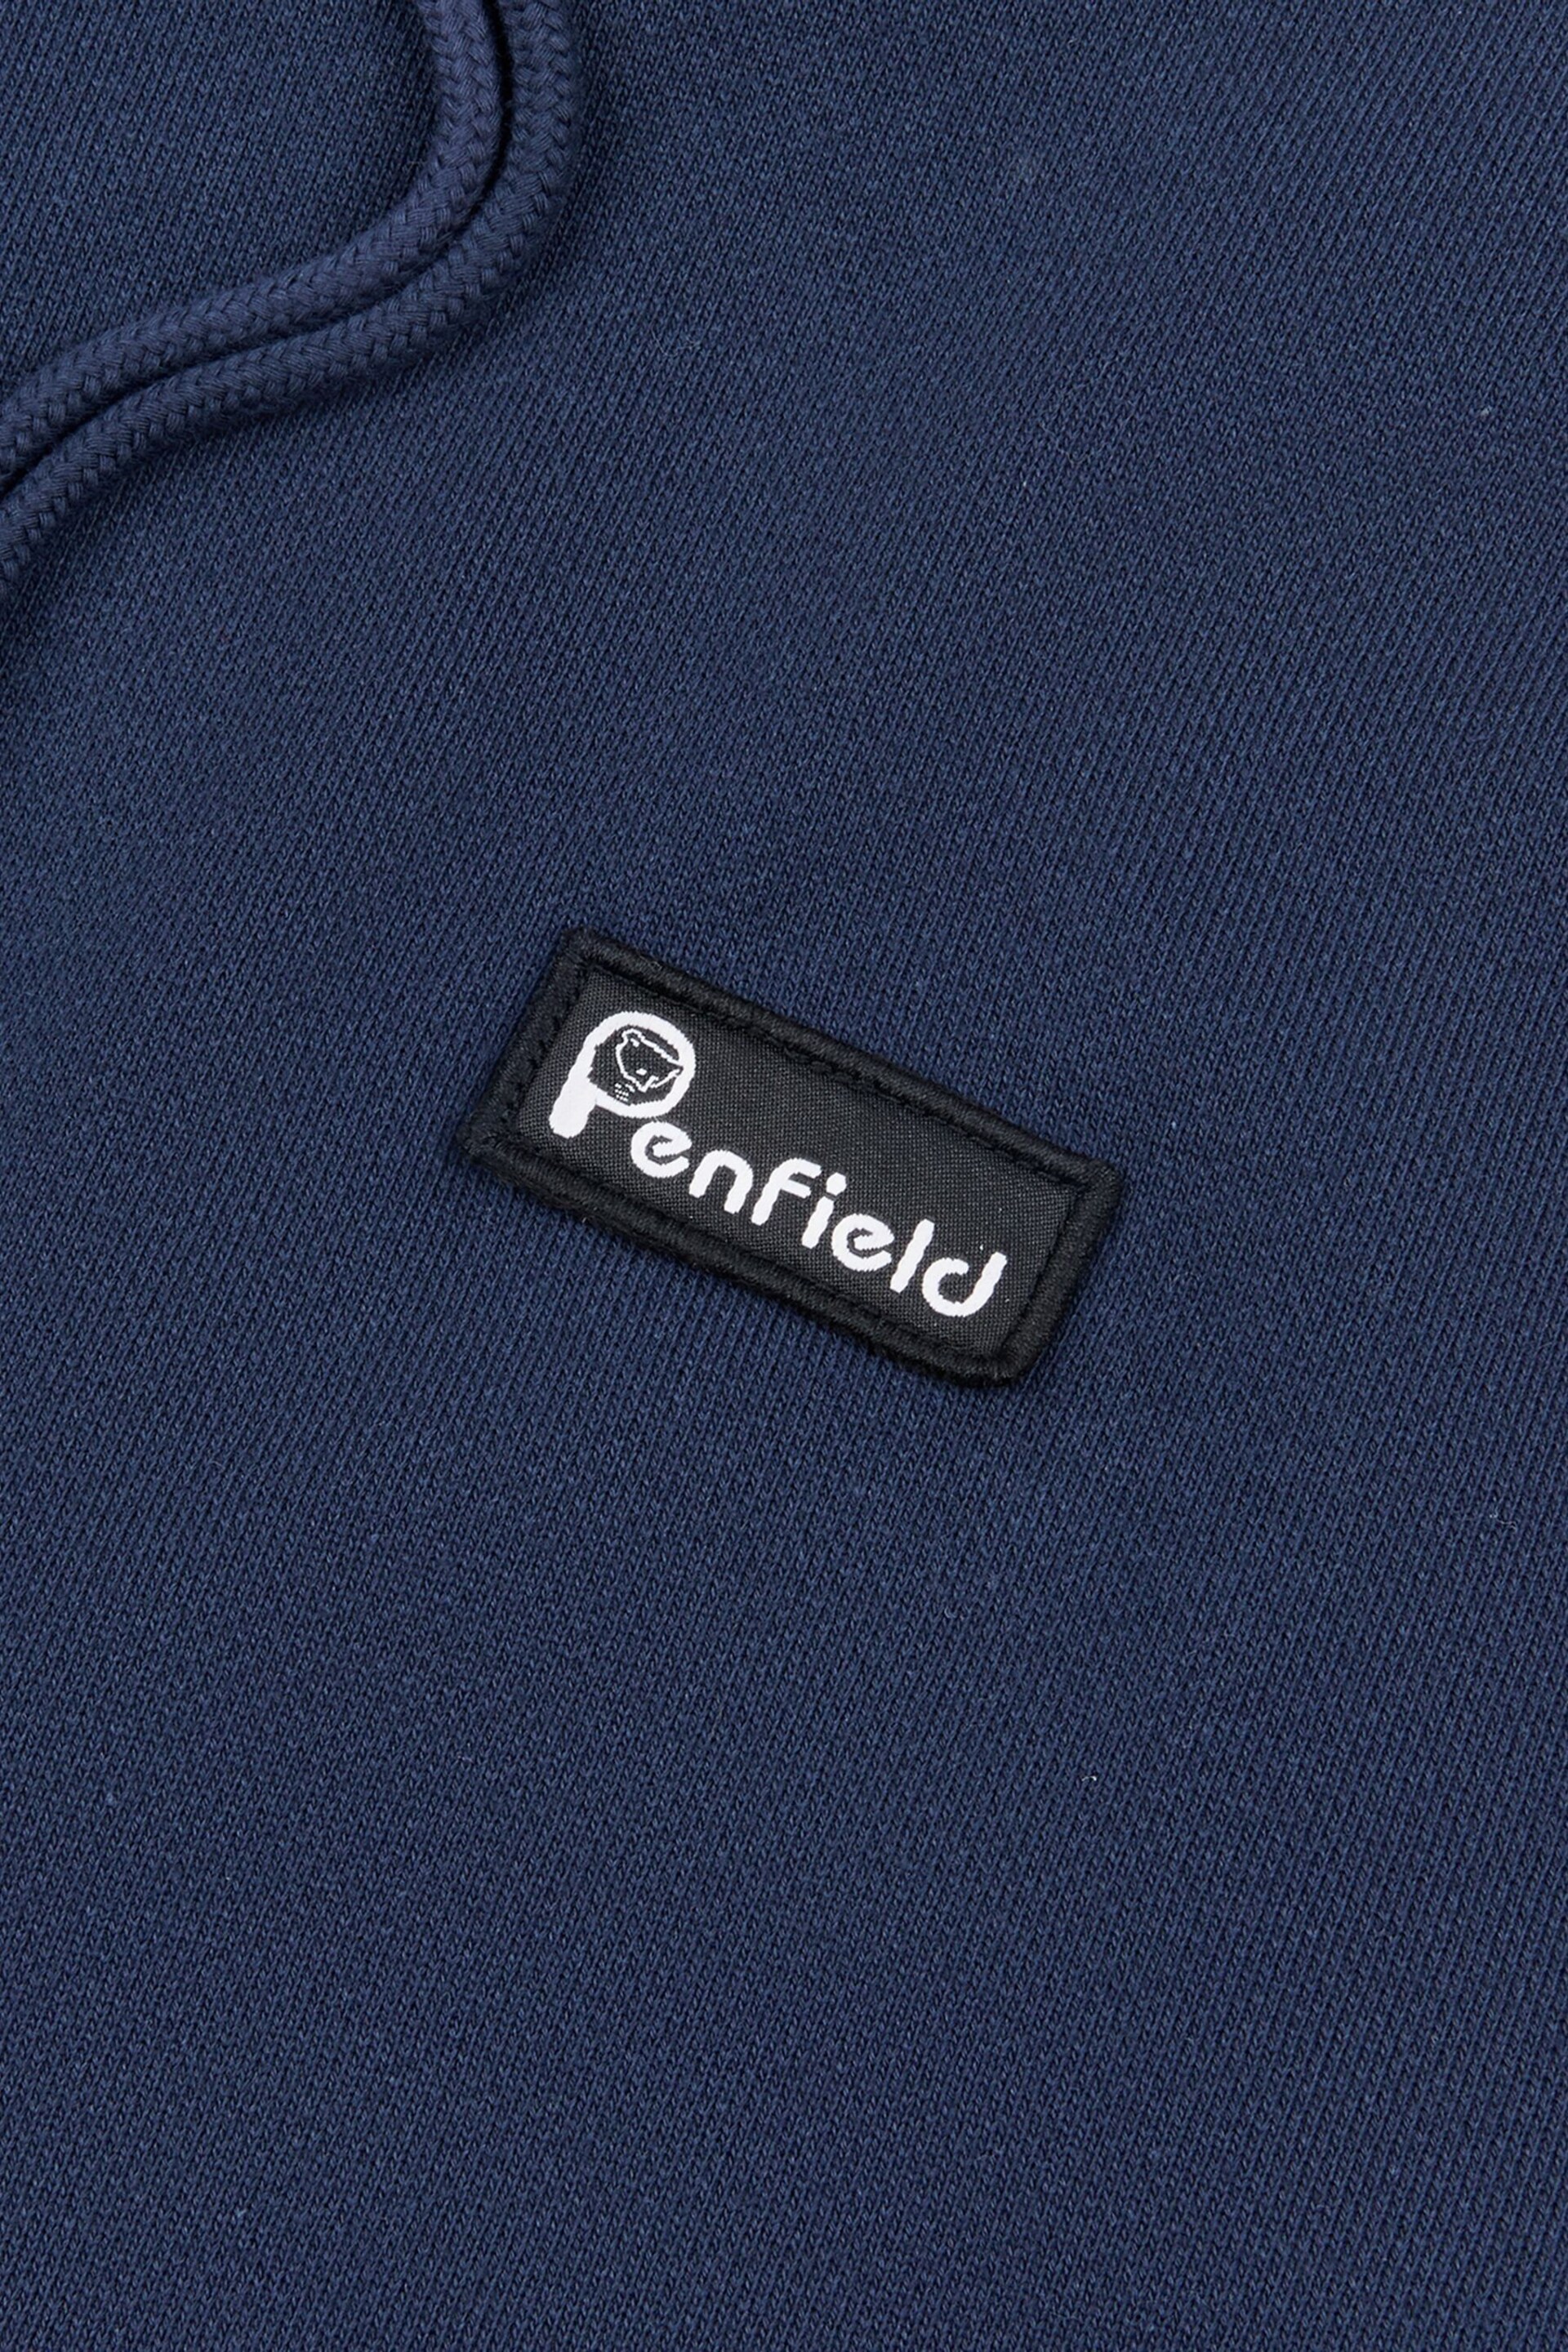 Penfield Blue Badge Hoodie - Image 6 of 6